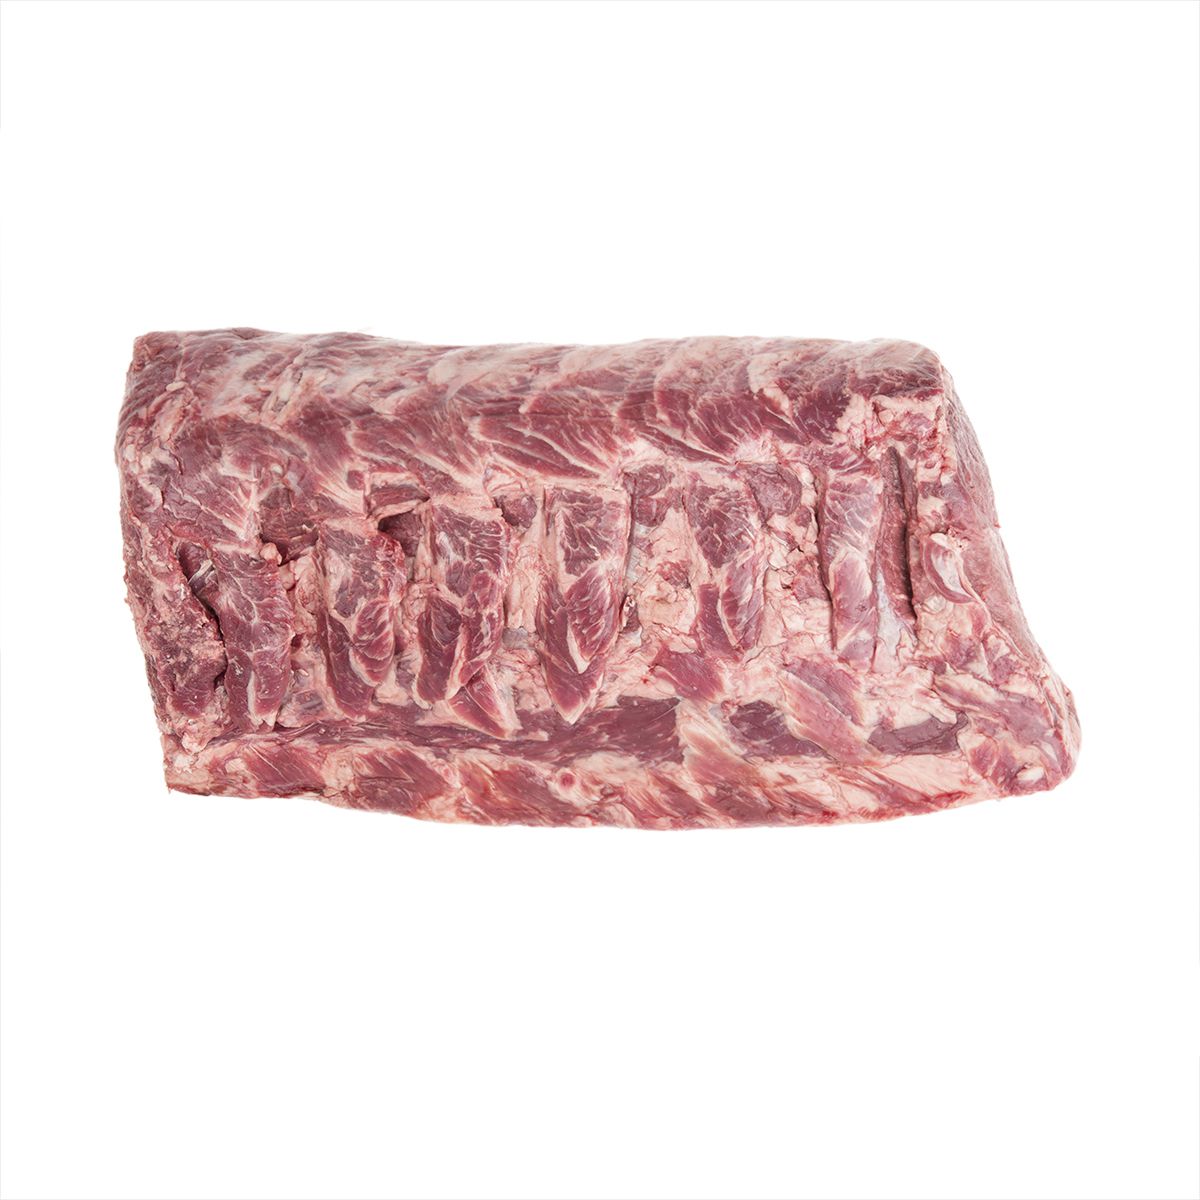 Marketside Butcher Grass-Fed Beef Top Sirloin Steak 1lb 10ct